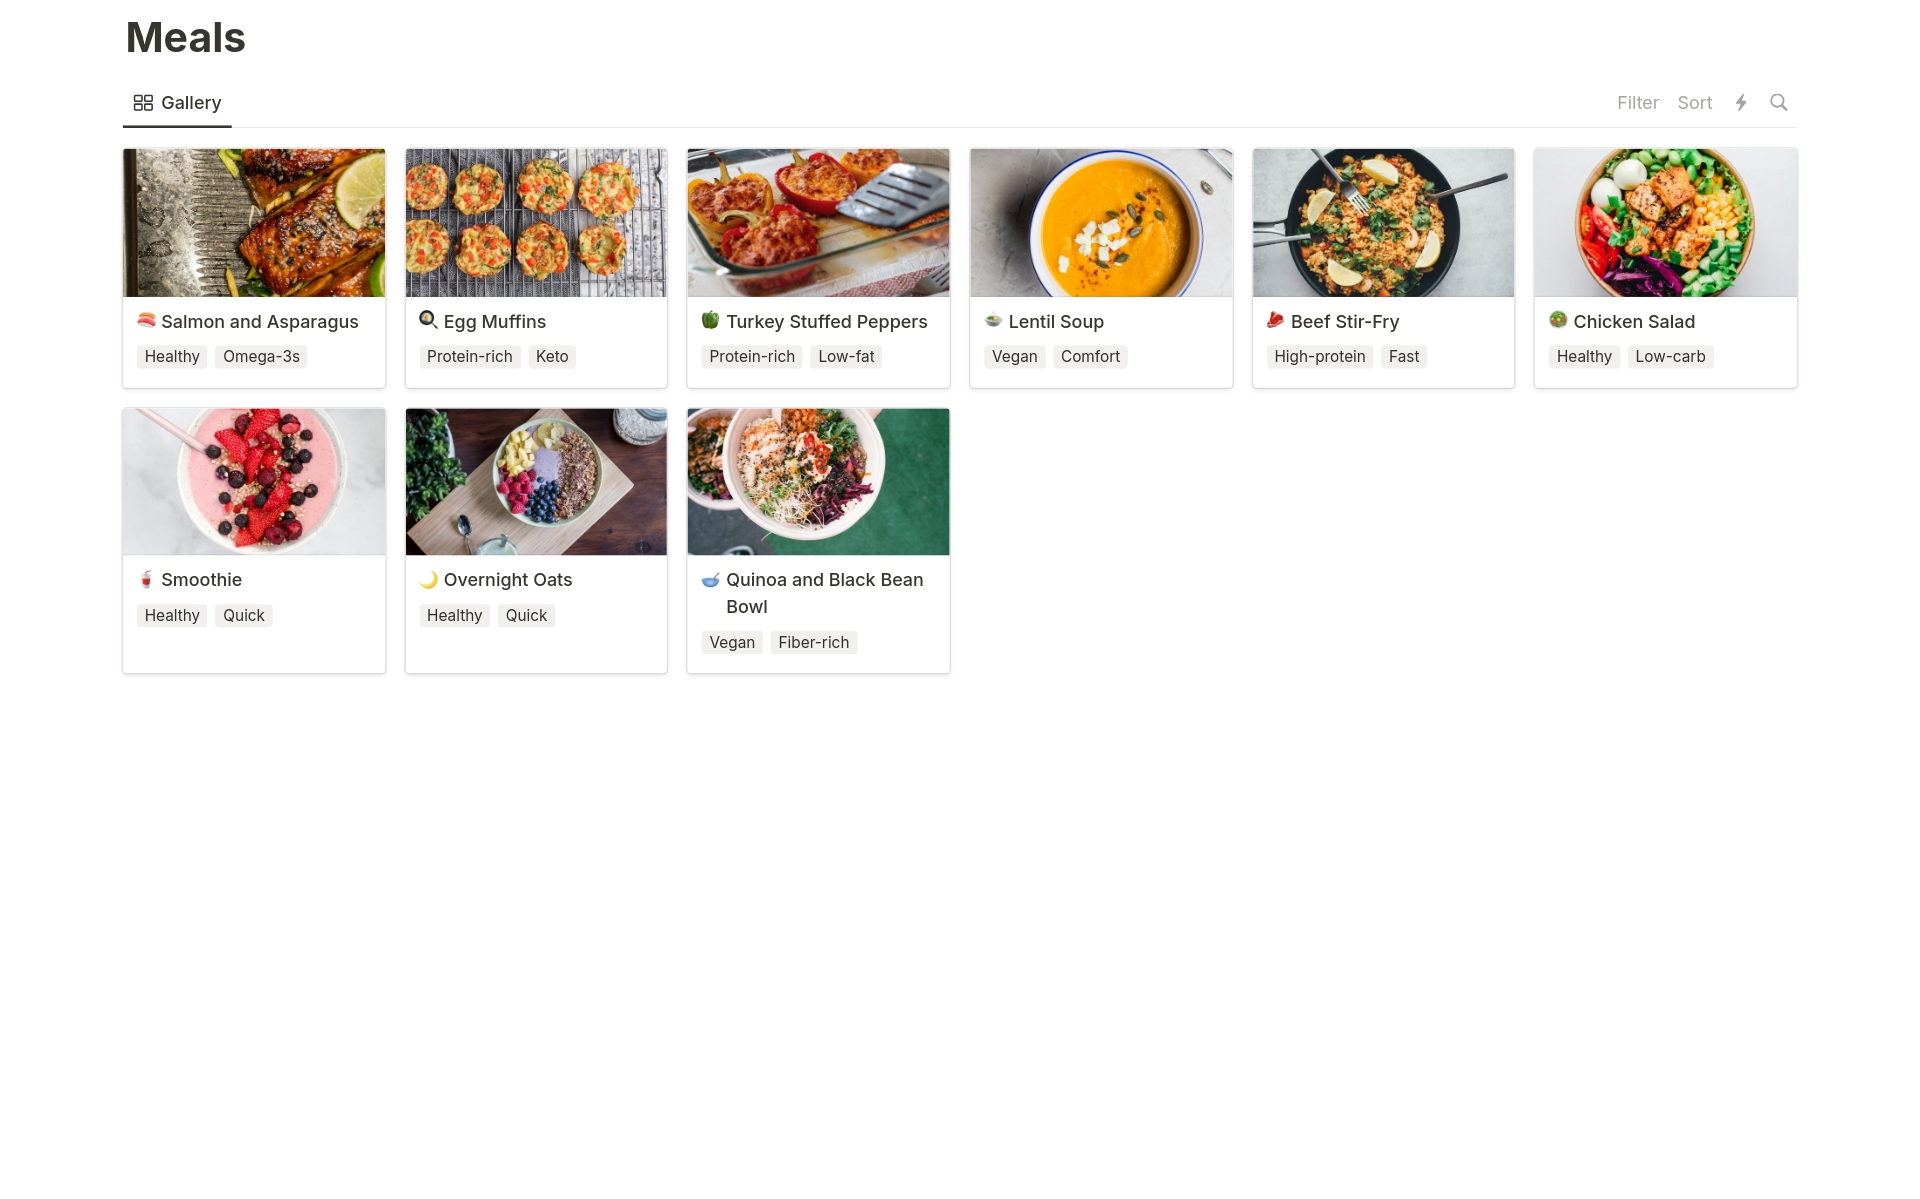 Captura recetas e ideas para comidas, prográmalas semanalmente y genera una lista de la compra.